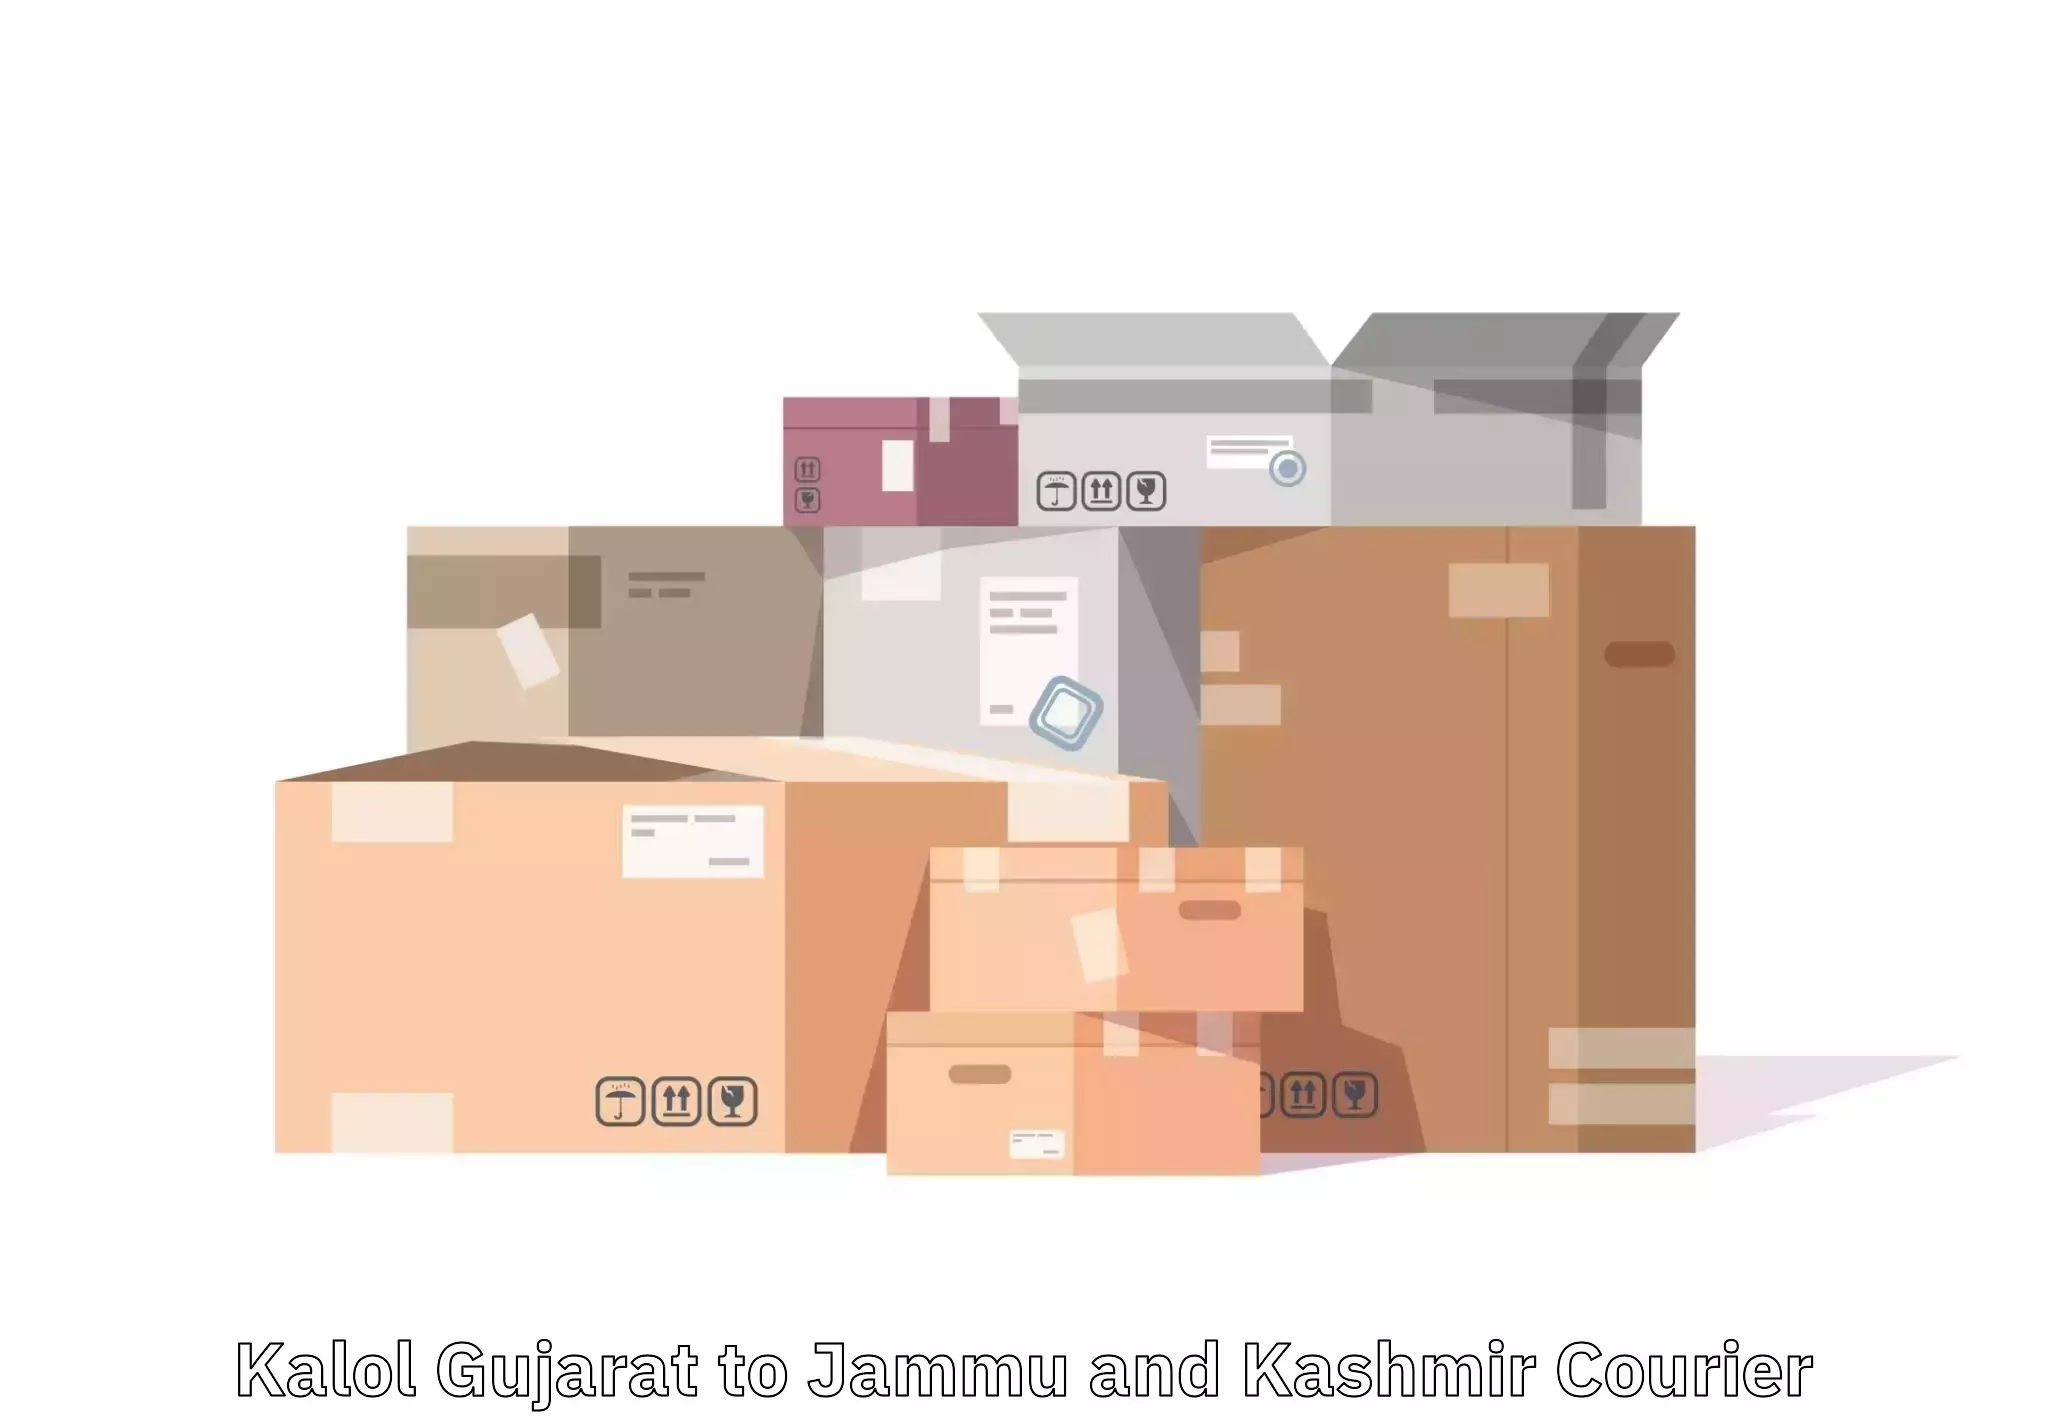 Door-to-door baggage service Kalol Gujarat to Poonch